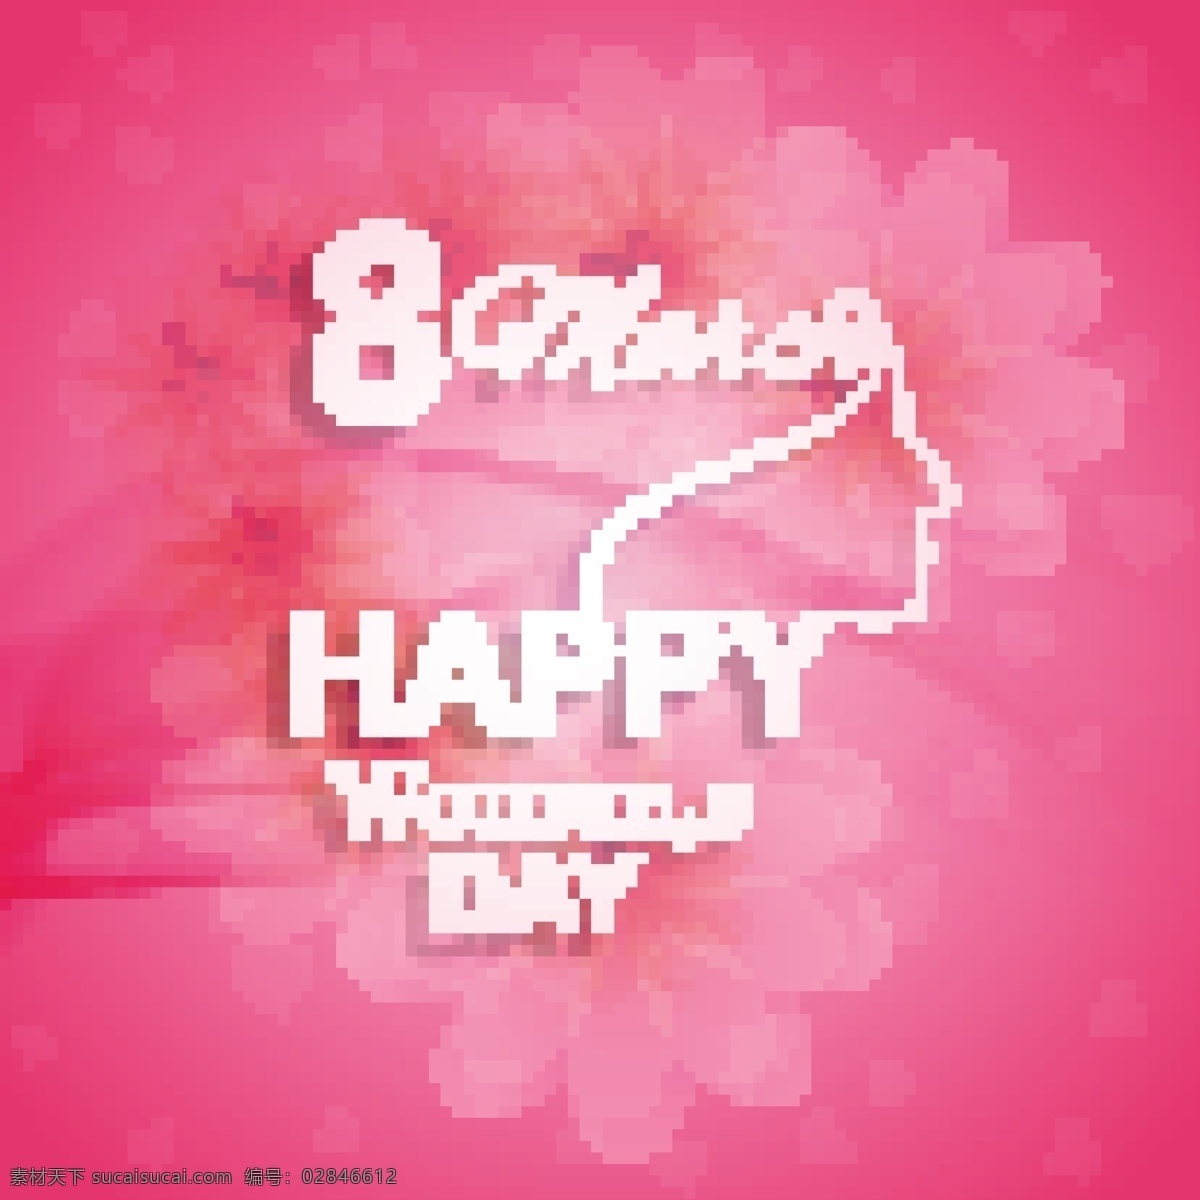 国际妇女节 粉红 背景 鲜花 庆祝 假日 女性 自由 国际 游行 妇女 平等 权利